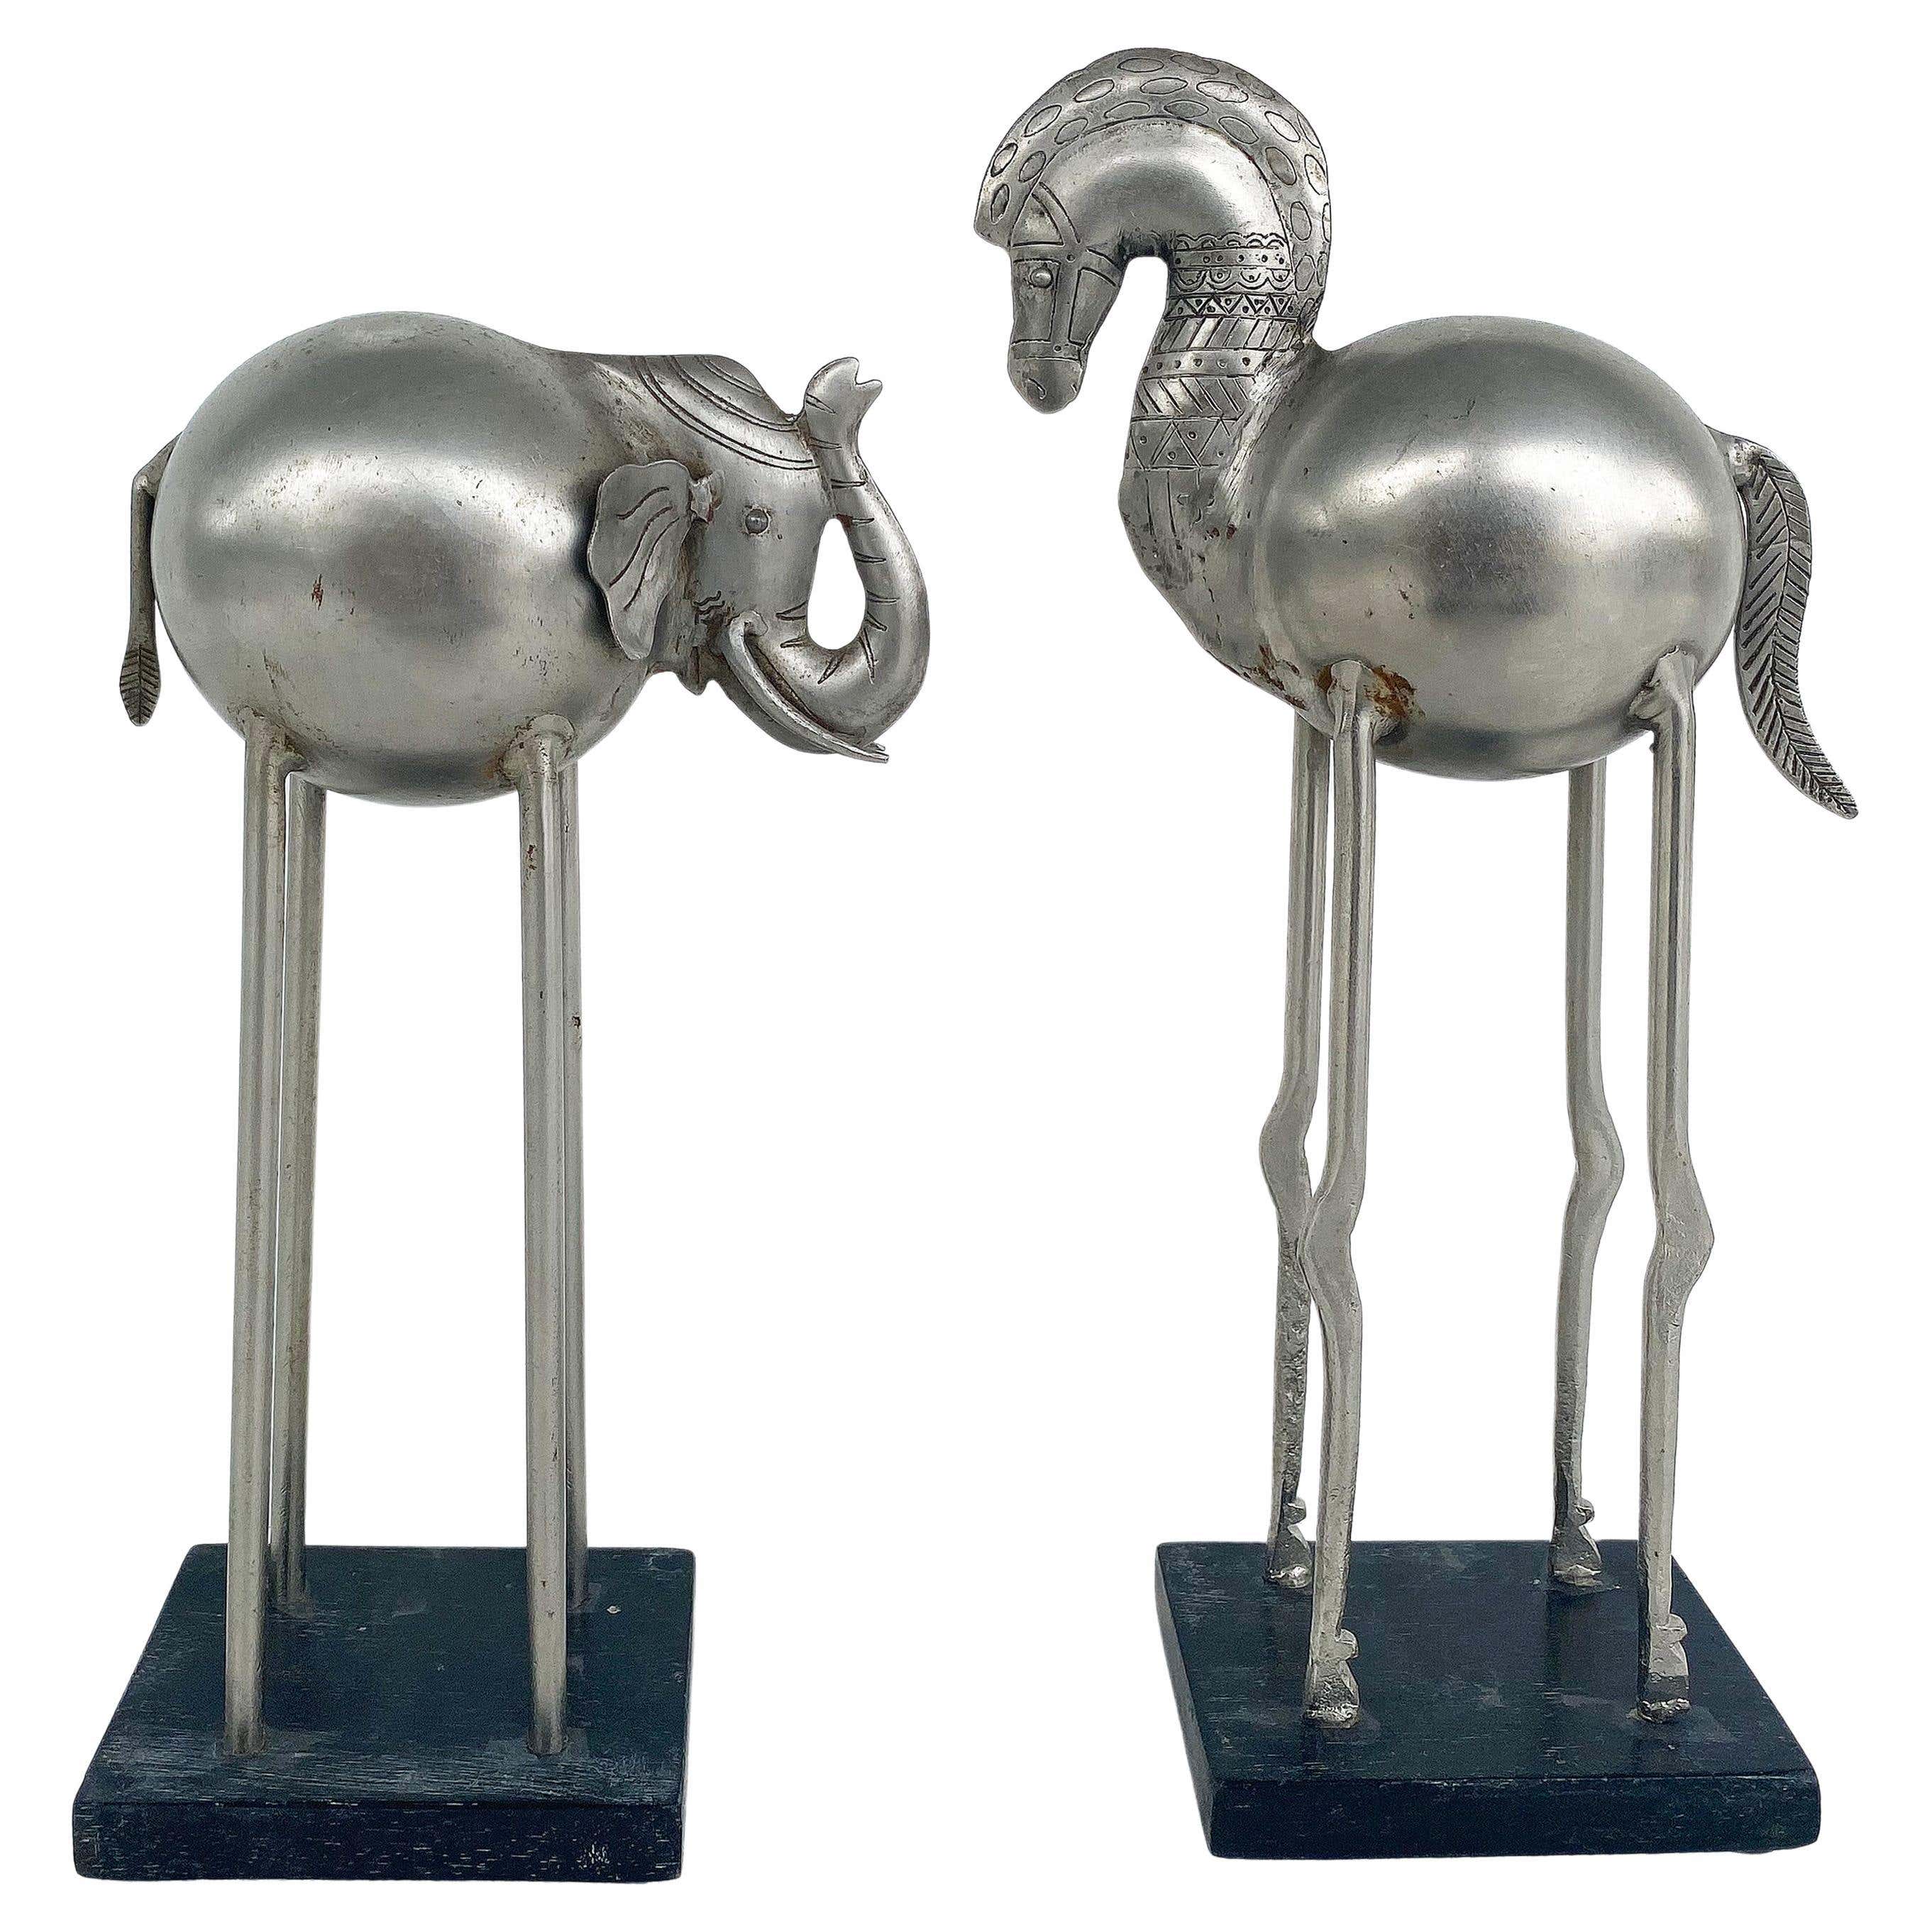 Esculturas modernas de mediados de siglo de caballo y elefante con patas alargadas